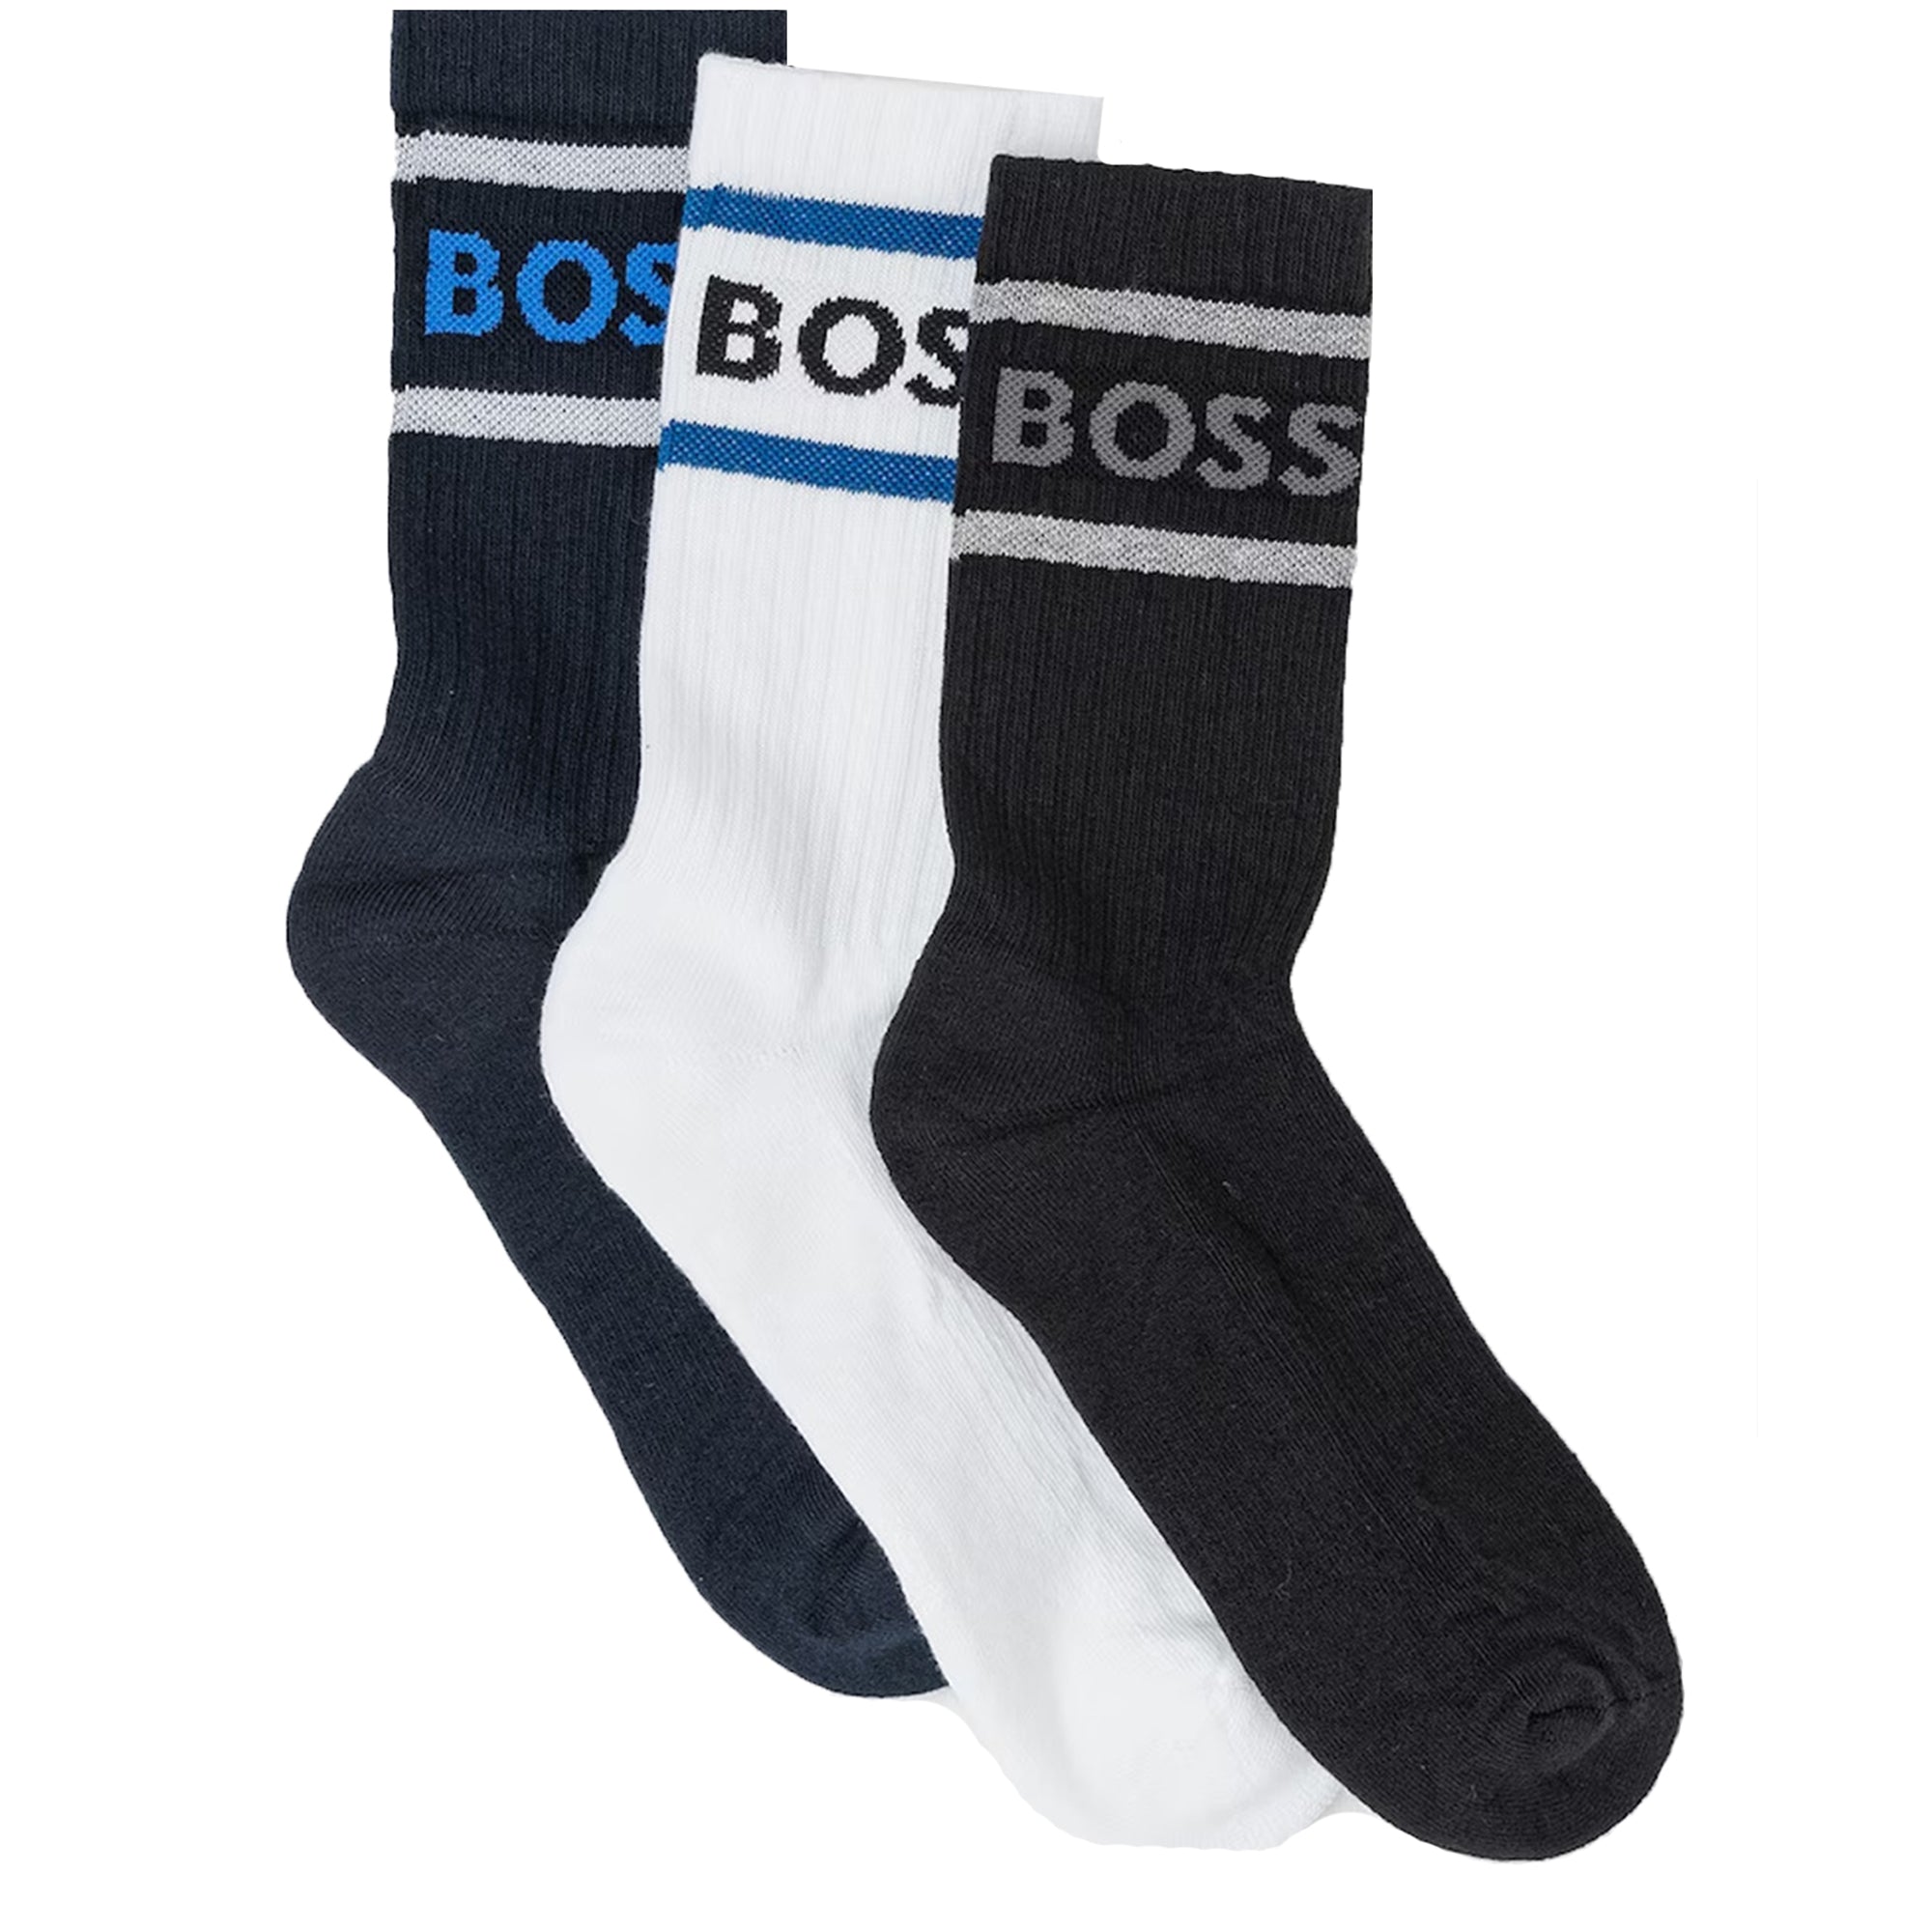 Hugo Boss Mens 3 Pack Socks